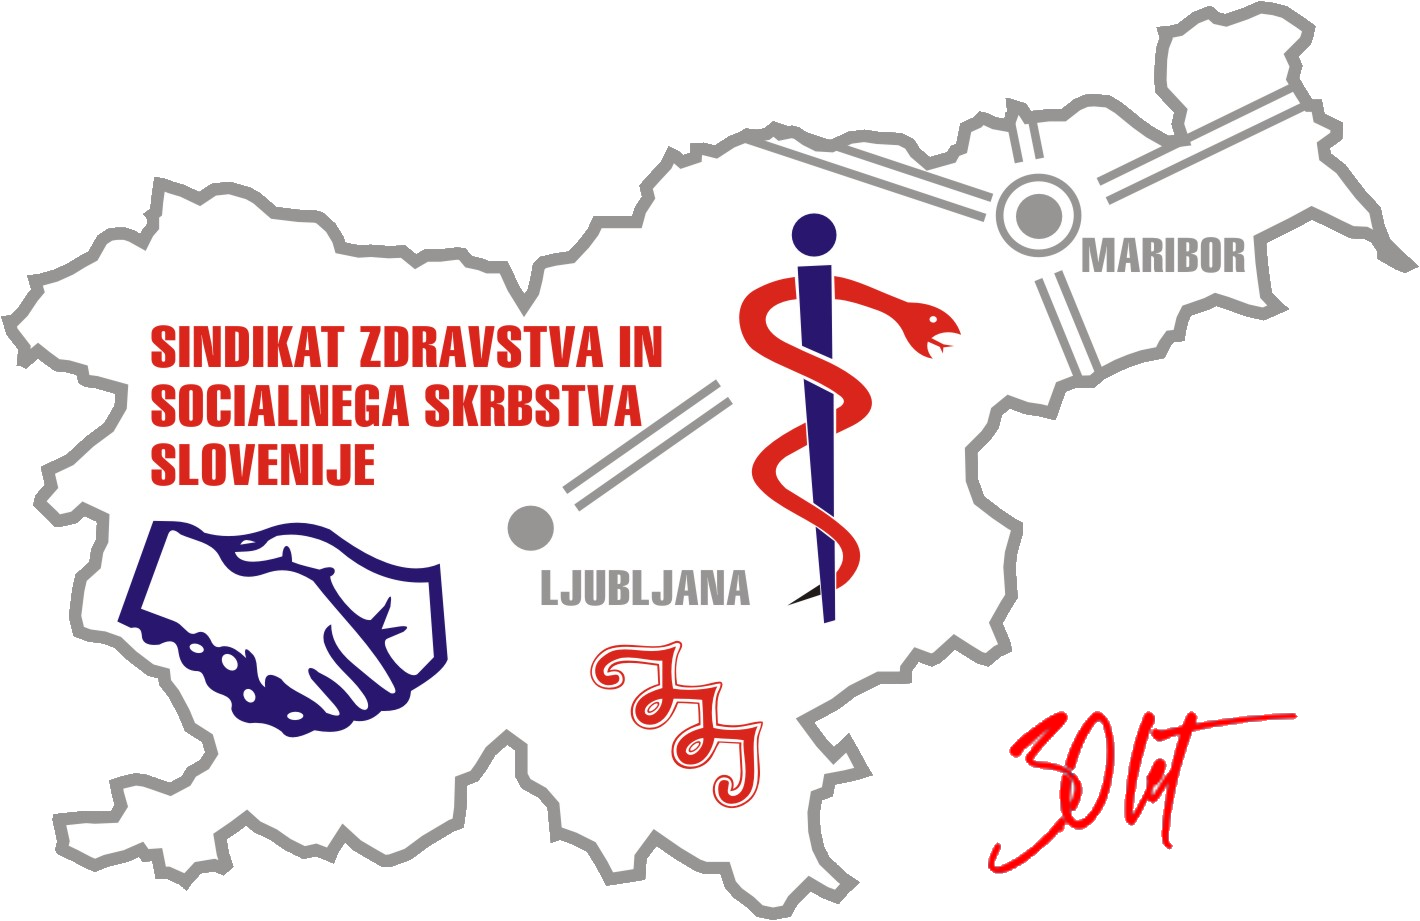 Sindikat zdravstva in socialnega skrbstva Slovenije